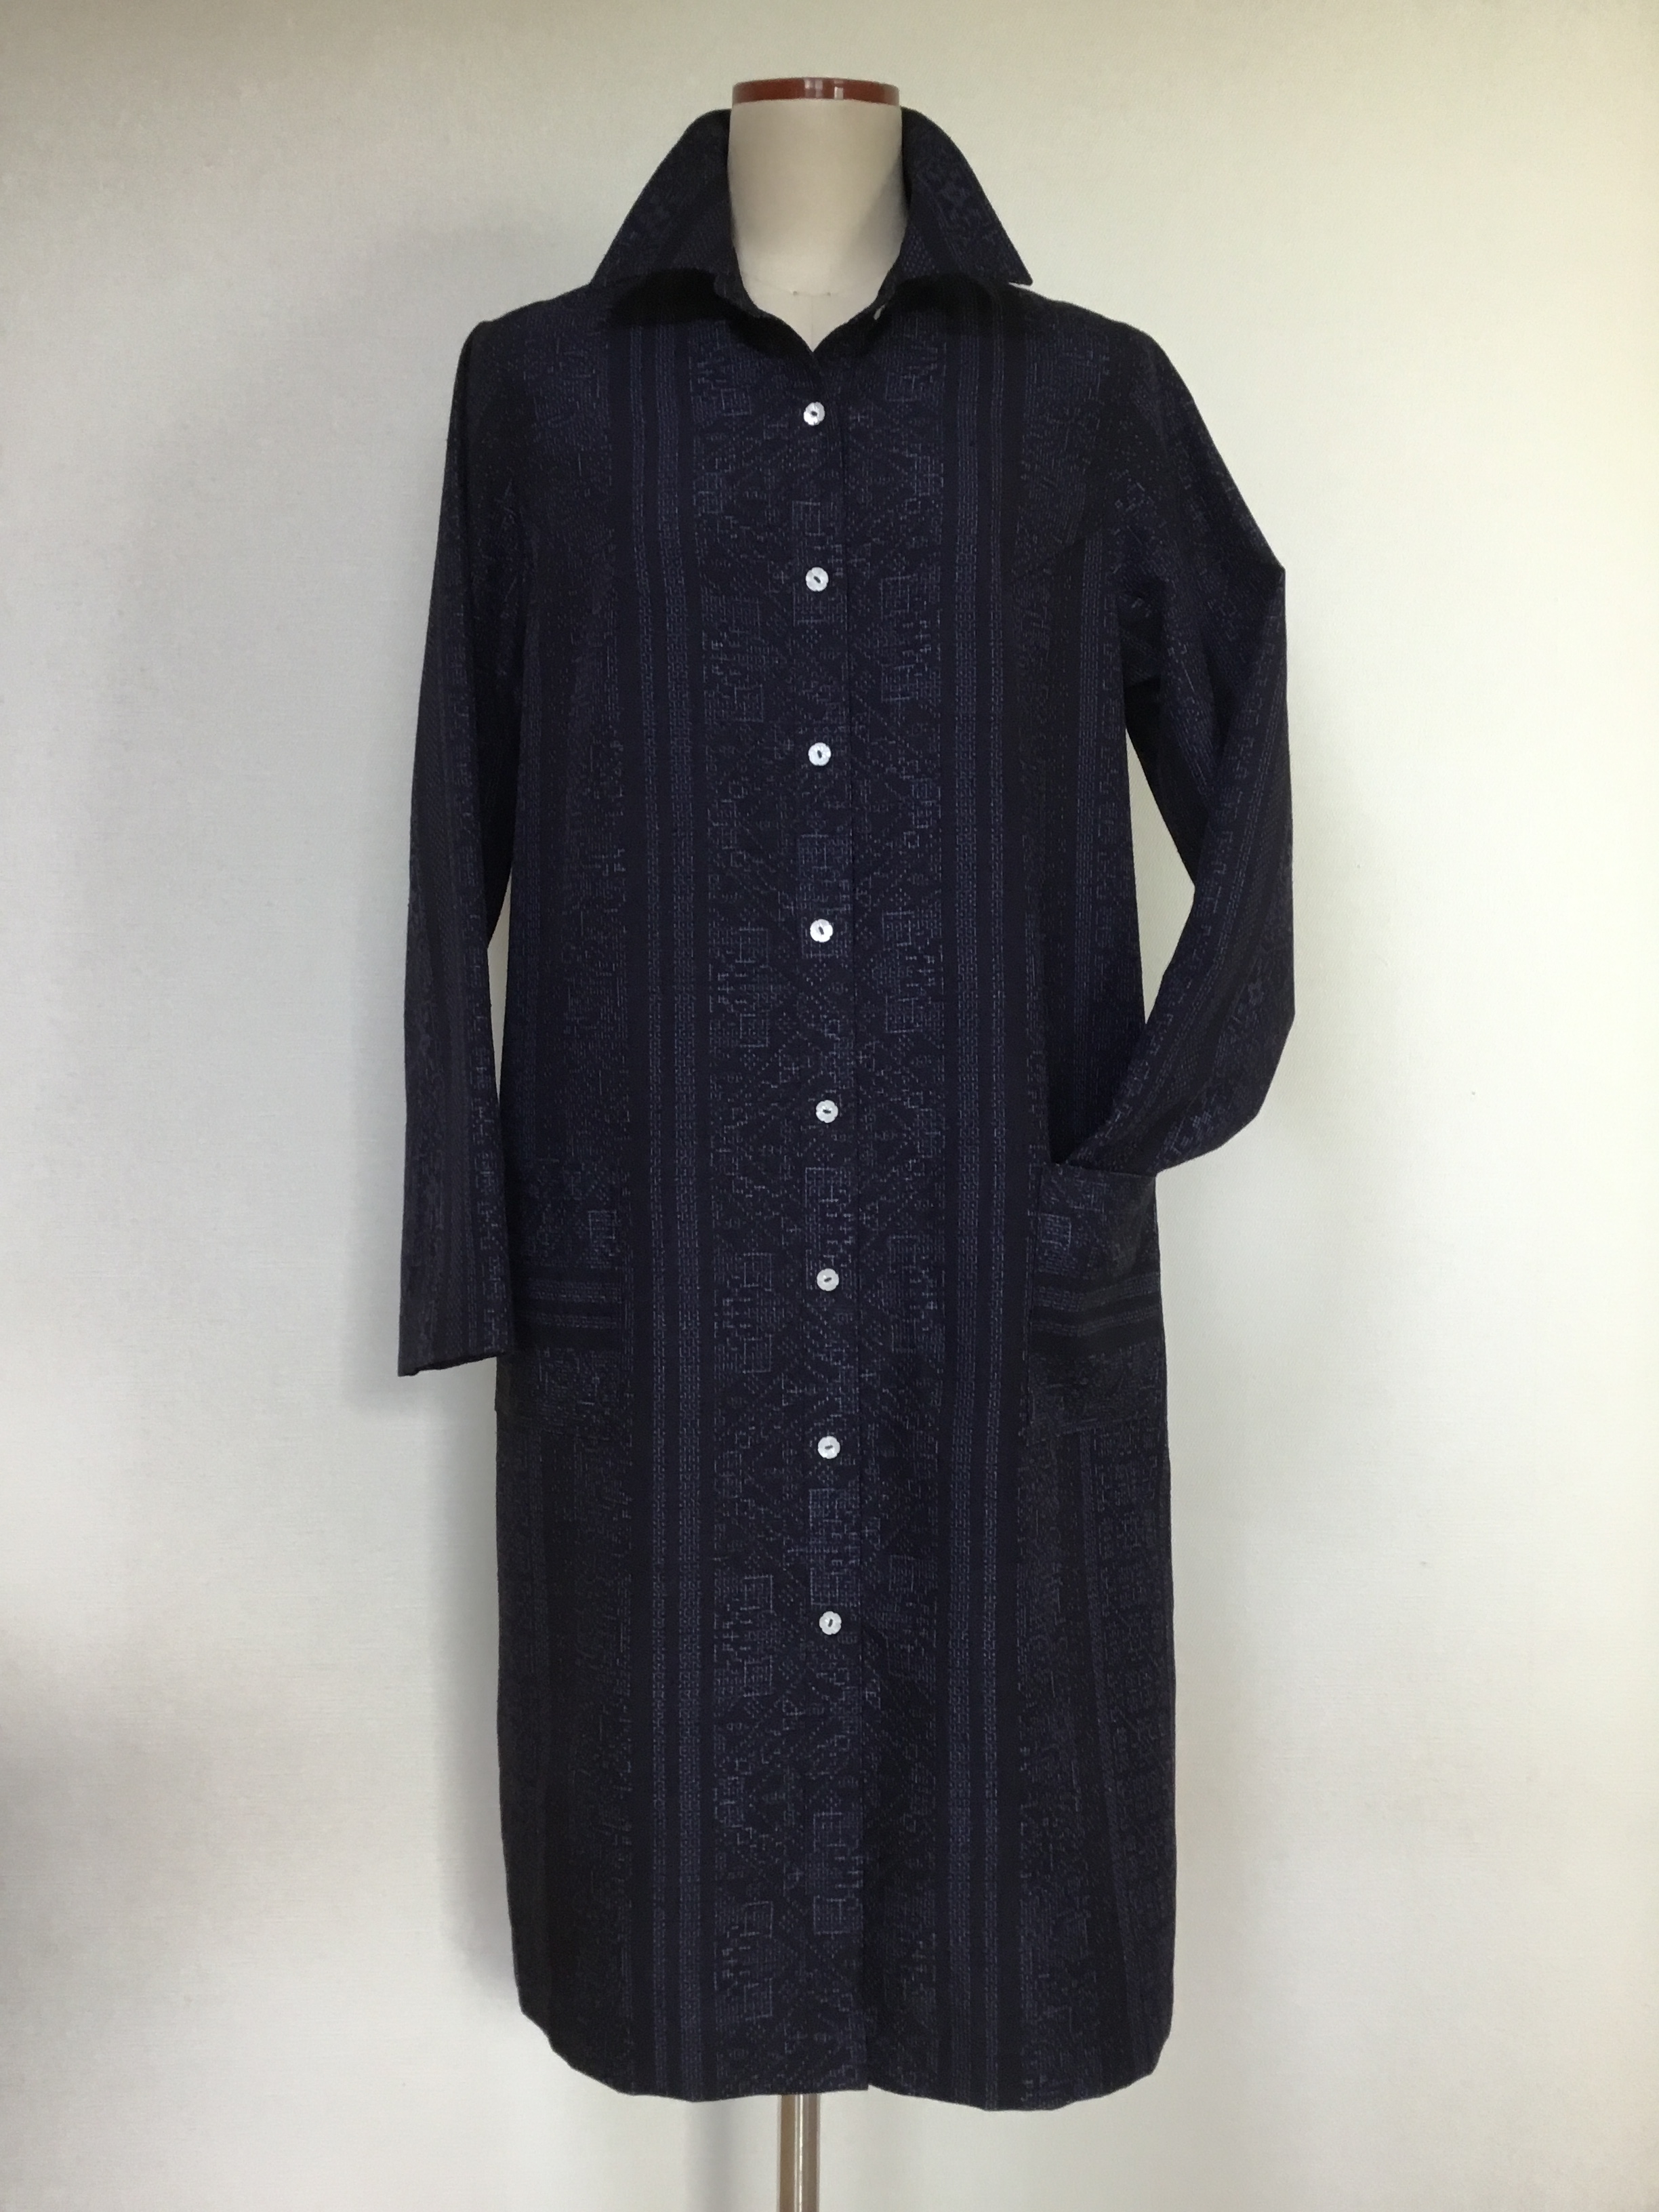 着物リメイク:正絹の紬からワンピースコート